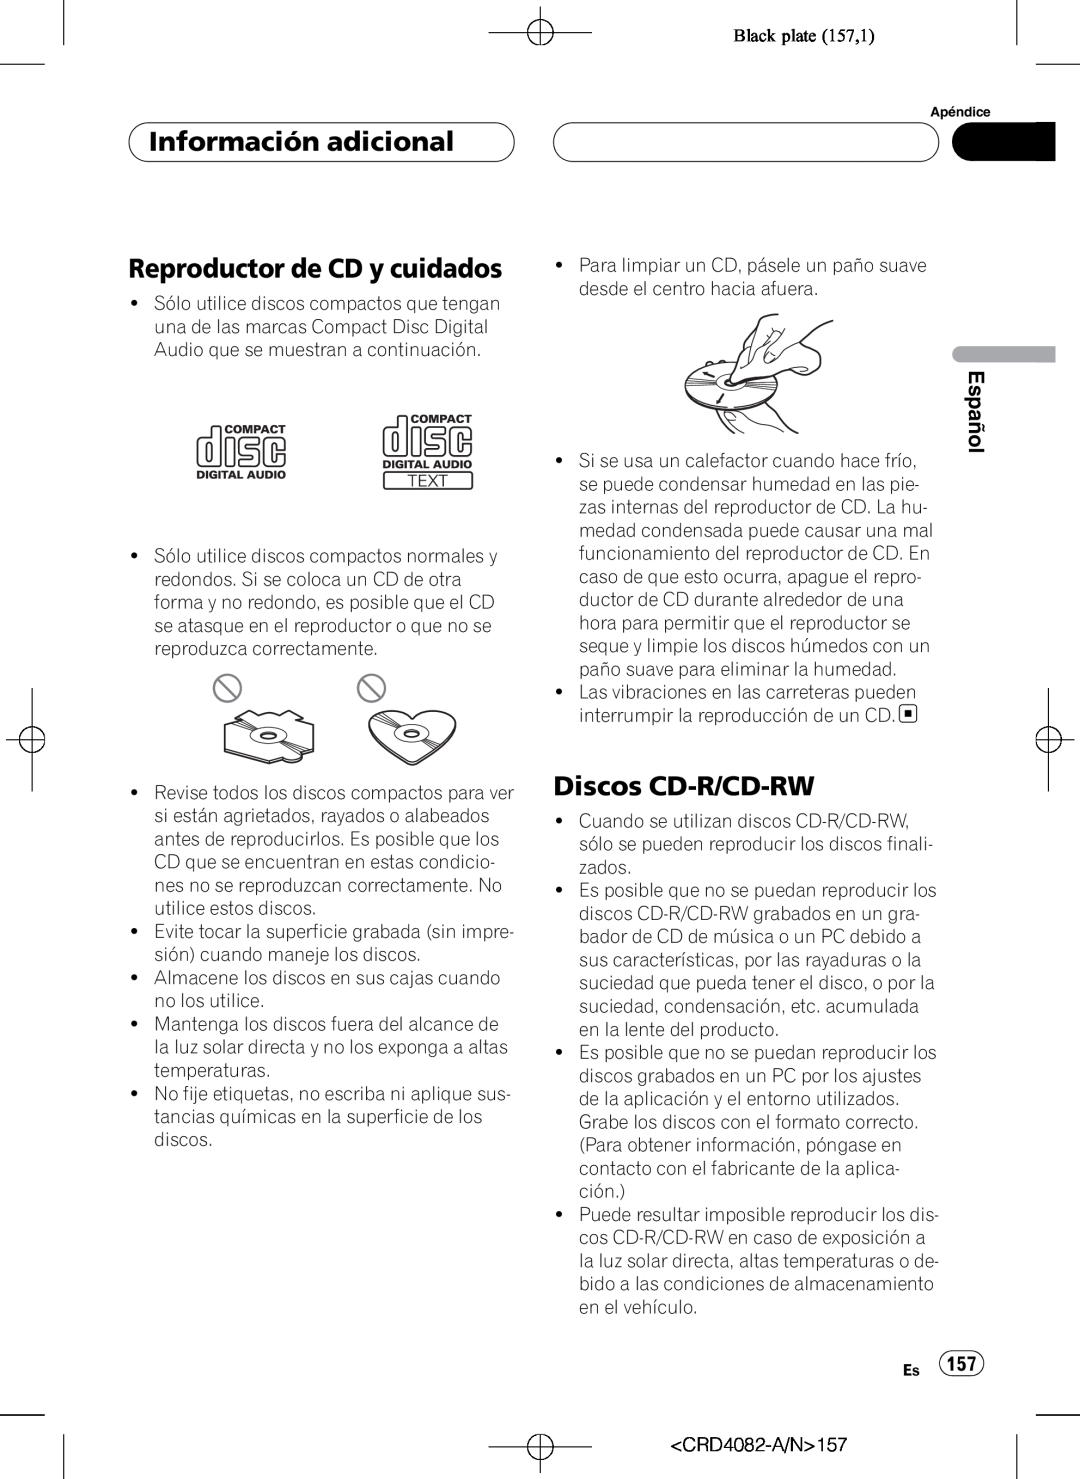 Pioneer DEH-P80RS Reproductor de CD y cuidados, Discos CD-R/CD-RW, Black plate 157,1, Información adicional, Español 